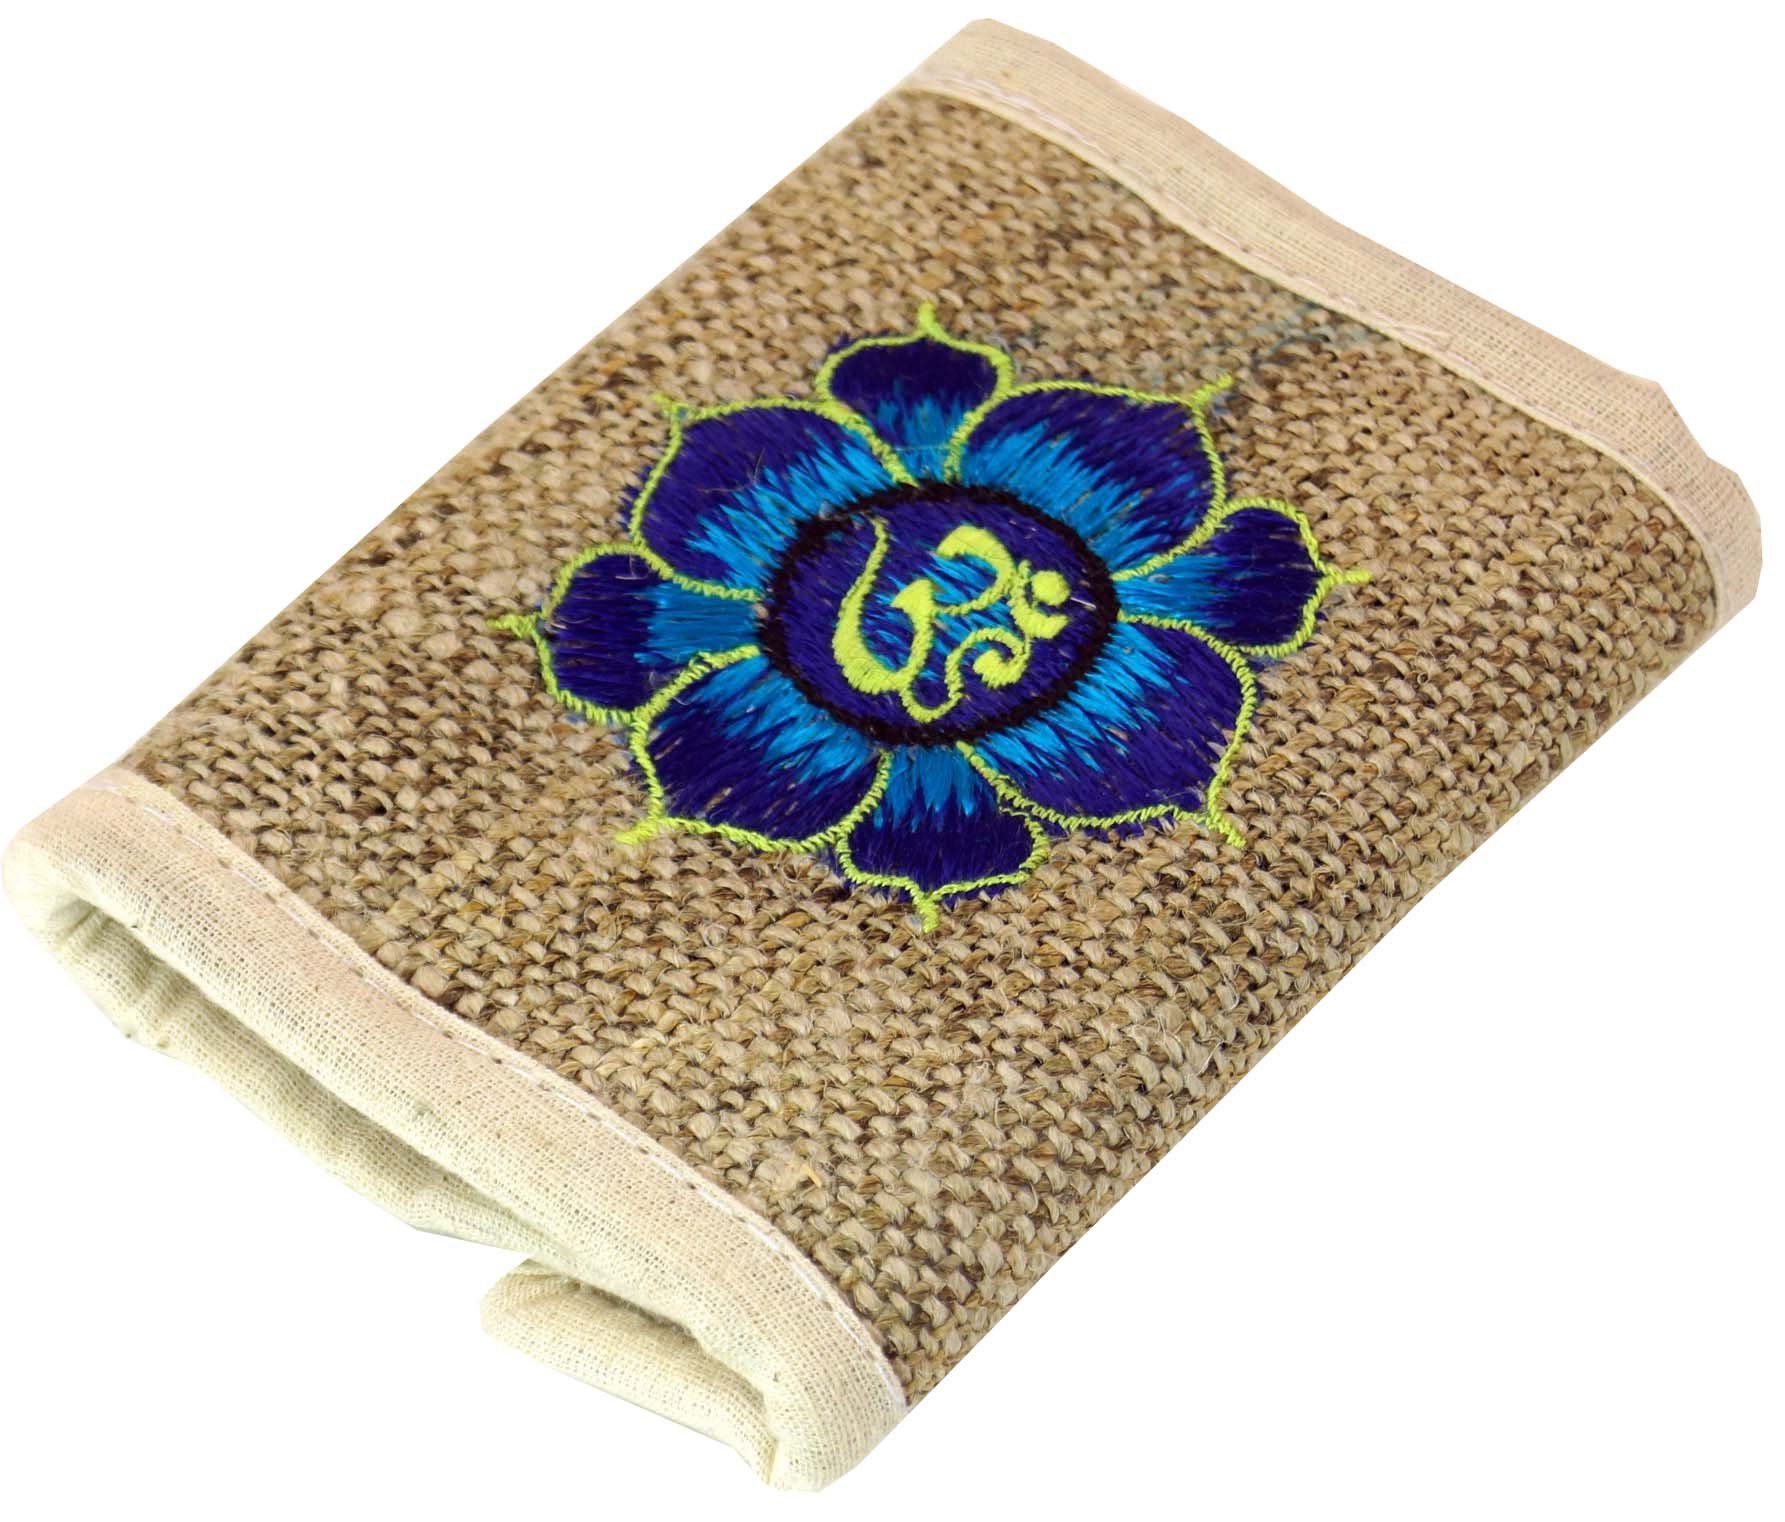 Guru-Shop Geldbörse Hanf Portemonnaie mit Stickerei lotus blau-weiß